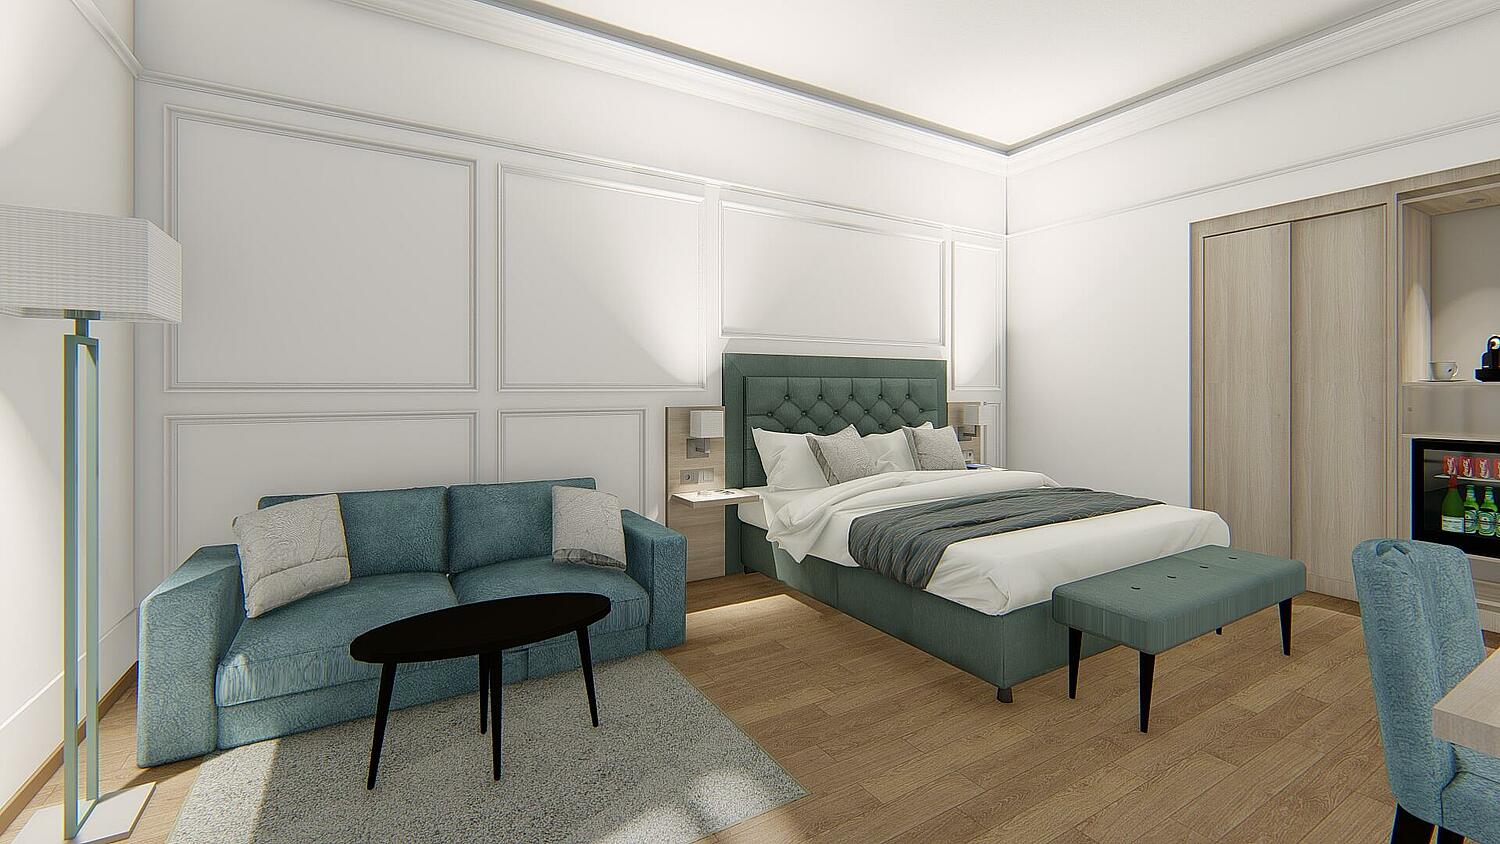 Großes Hotelzimmer mit Doppelbett und ausziehbarer Schlafcouch